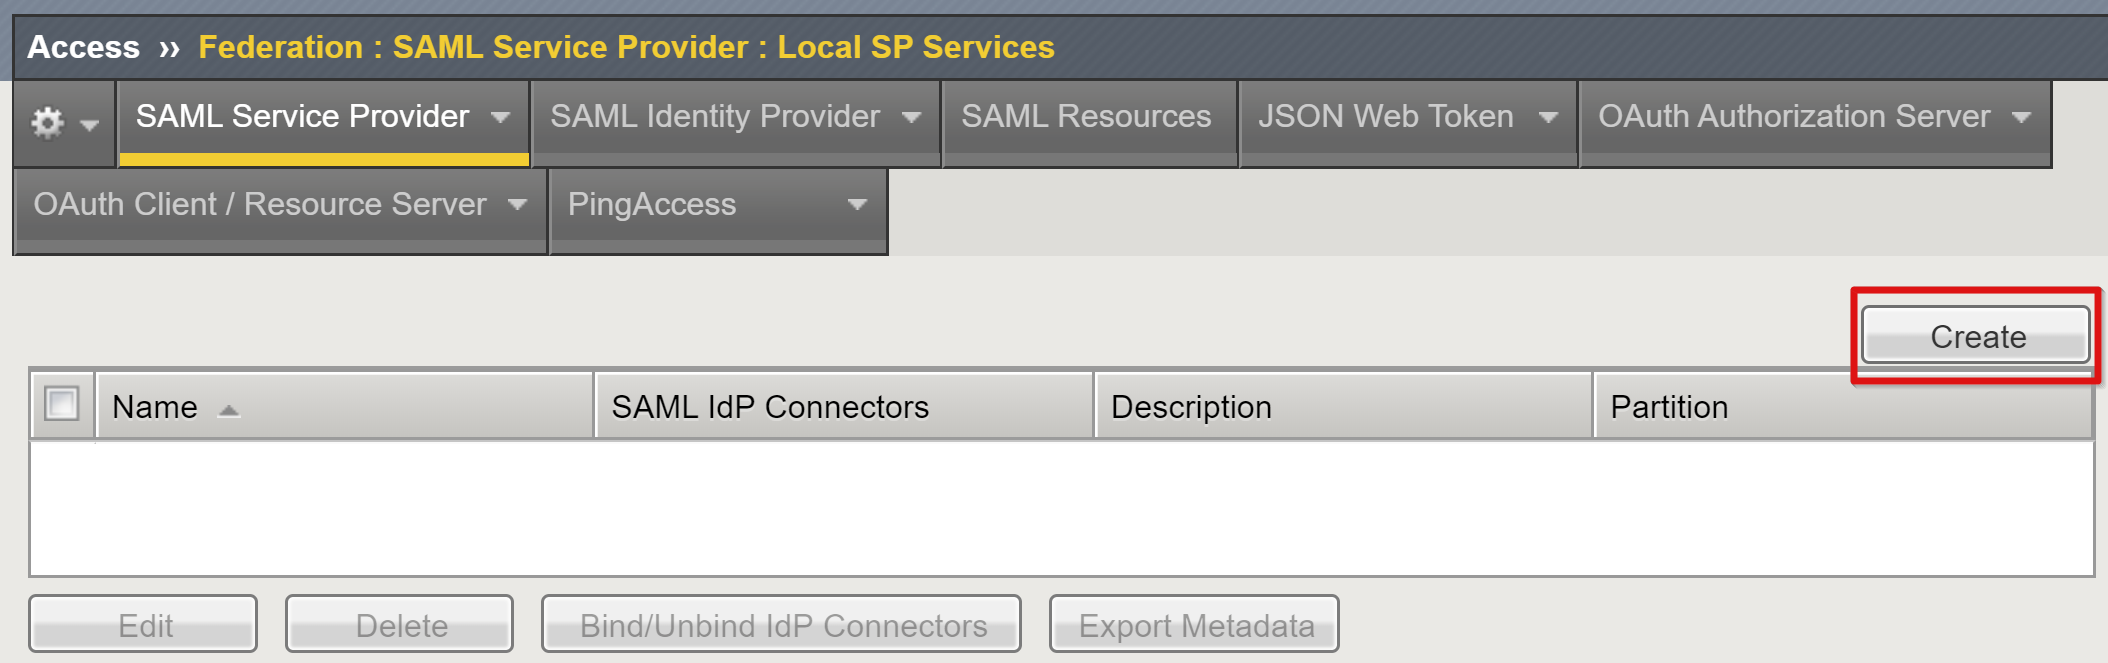 Képernyőkép a Helyi SP-szolgáltatások lapon található Létrehozás lehetőségről.